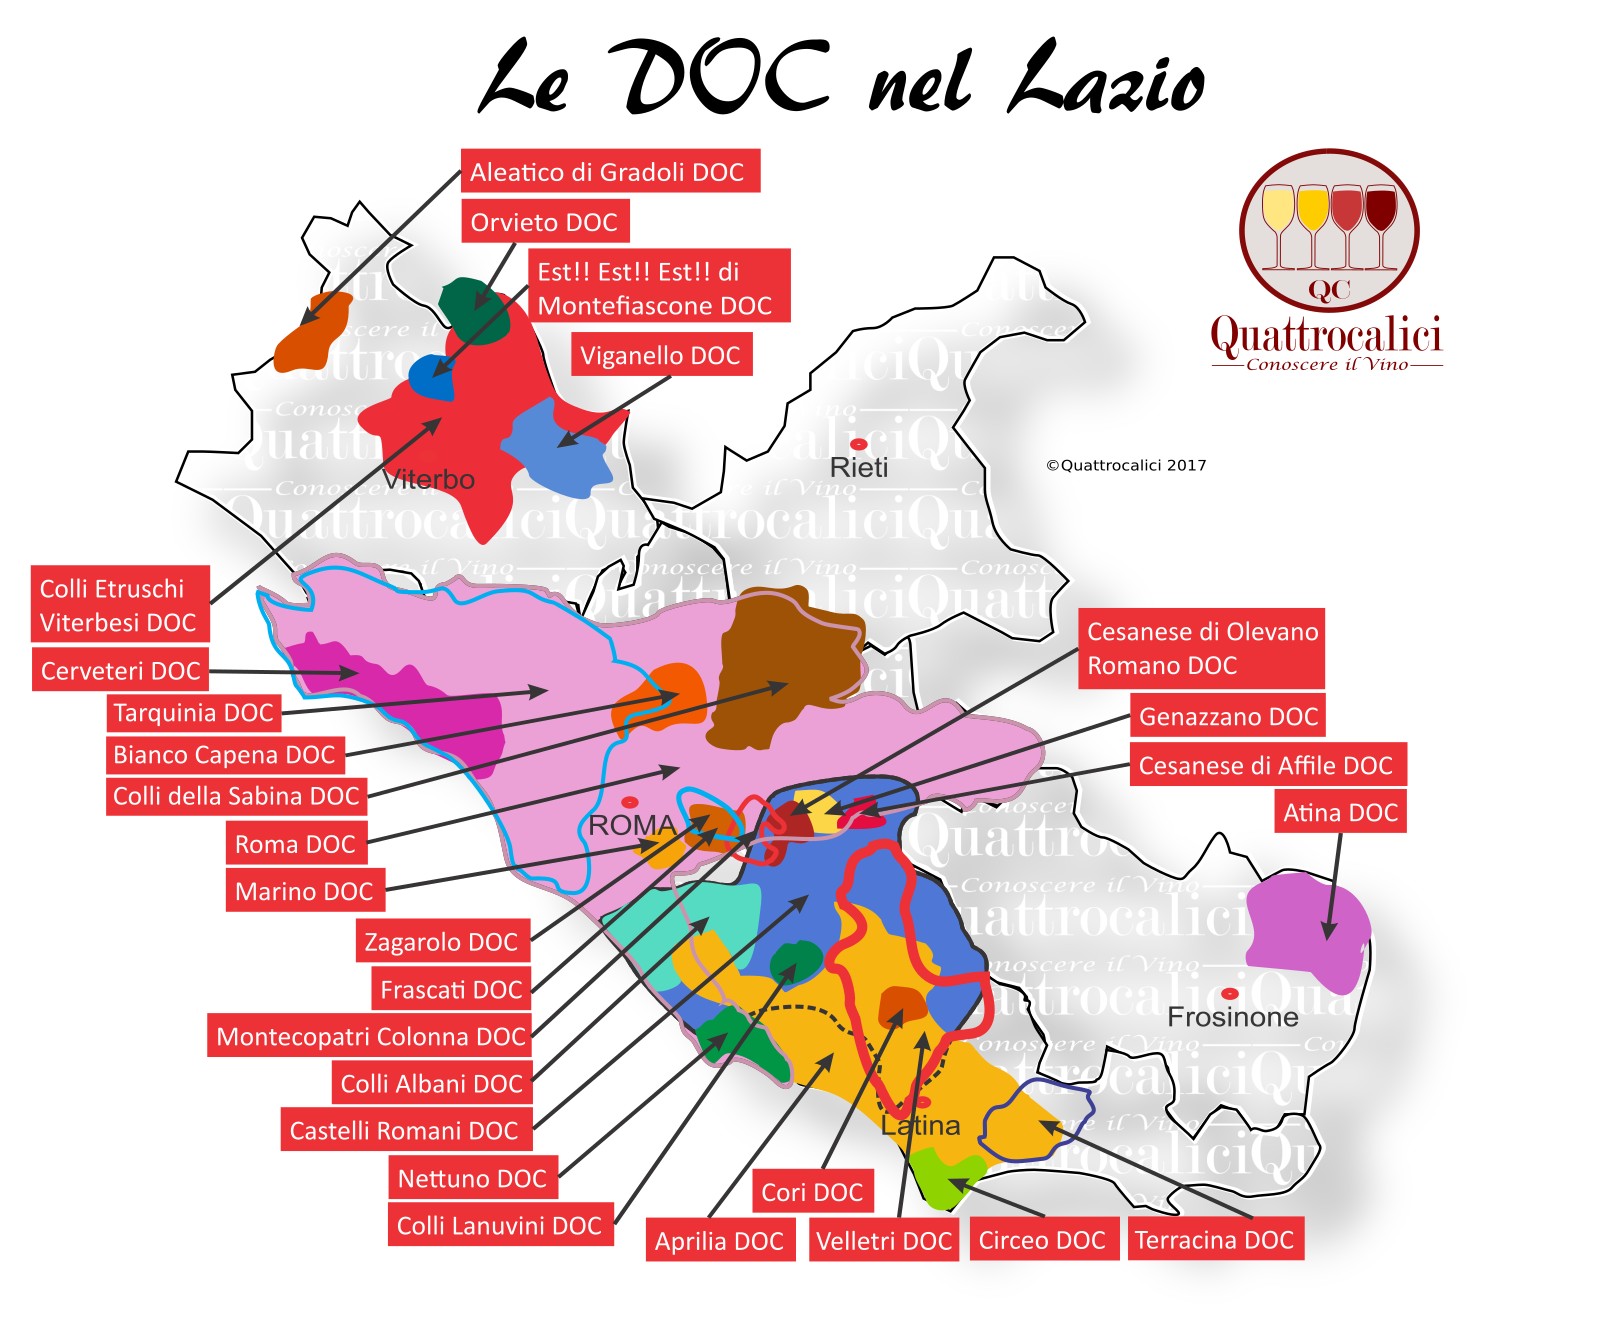 Lazio - La Guida al Vino e all'Enoturismo di Quattrocalici